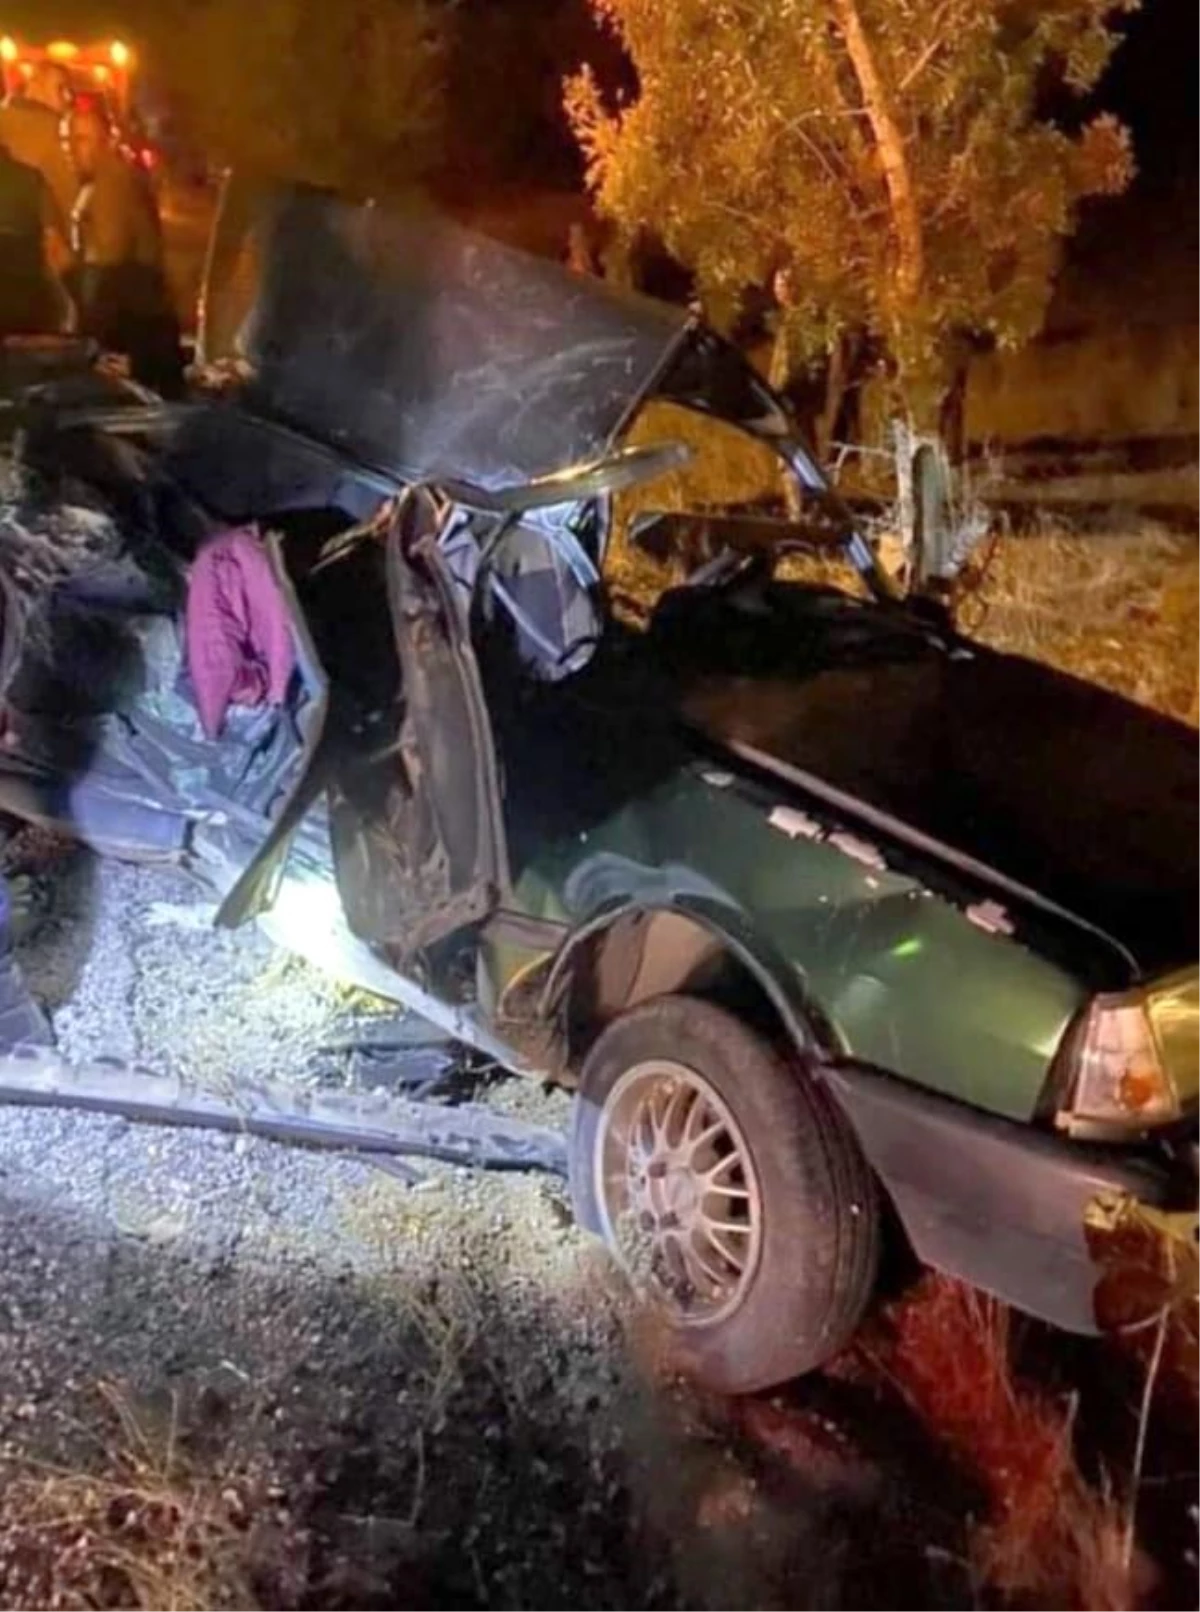 Motosiklete çarpan otomobil ardından karşı yönden gelen kamyonla çarpıştı: 2 kardeş öldü, 1 yaralı